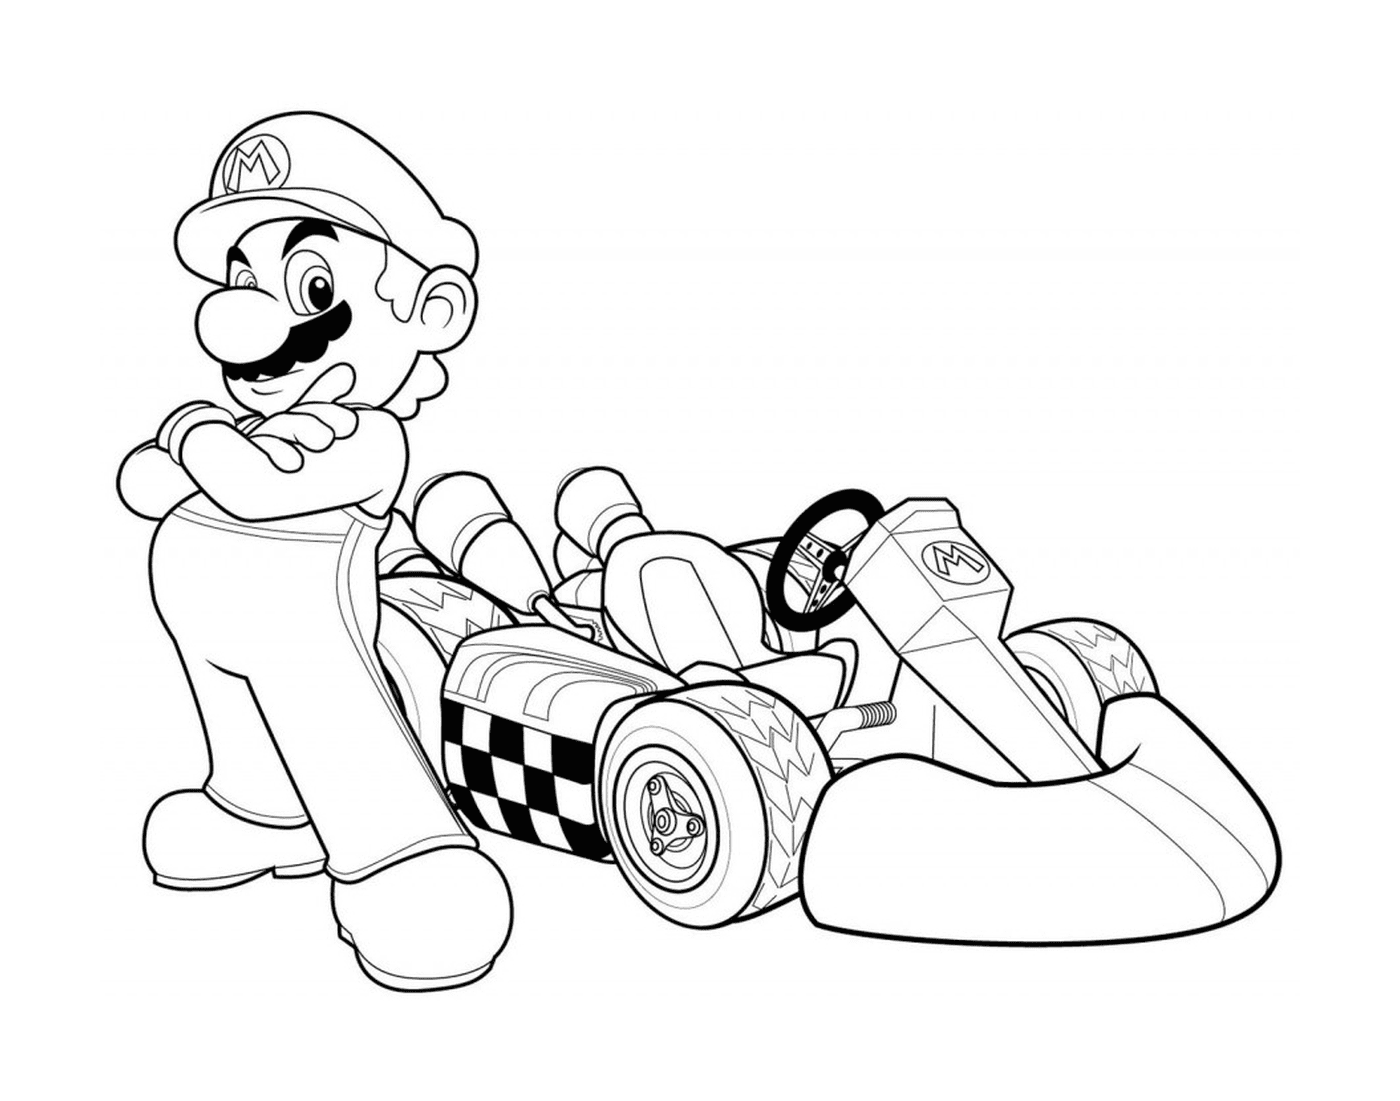   Mario Kart, une voiture de Formule 1 